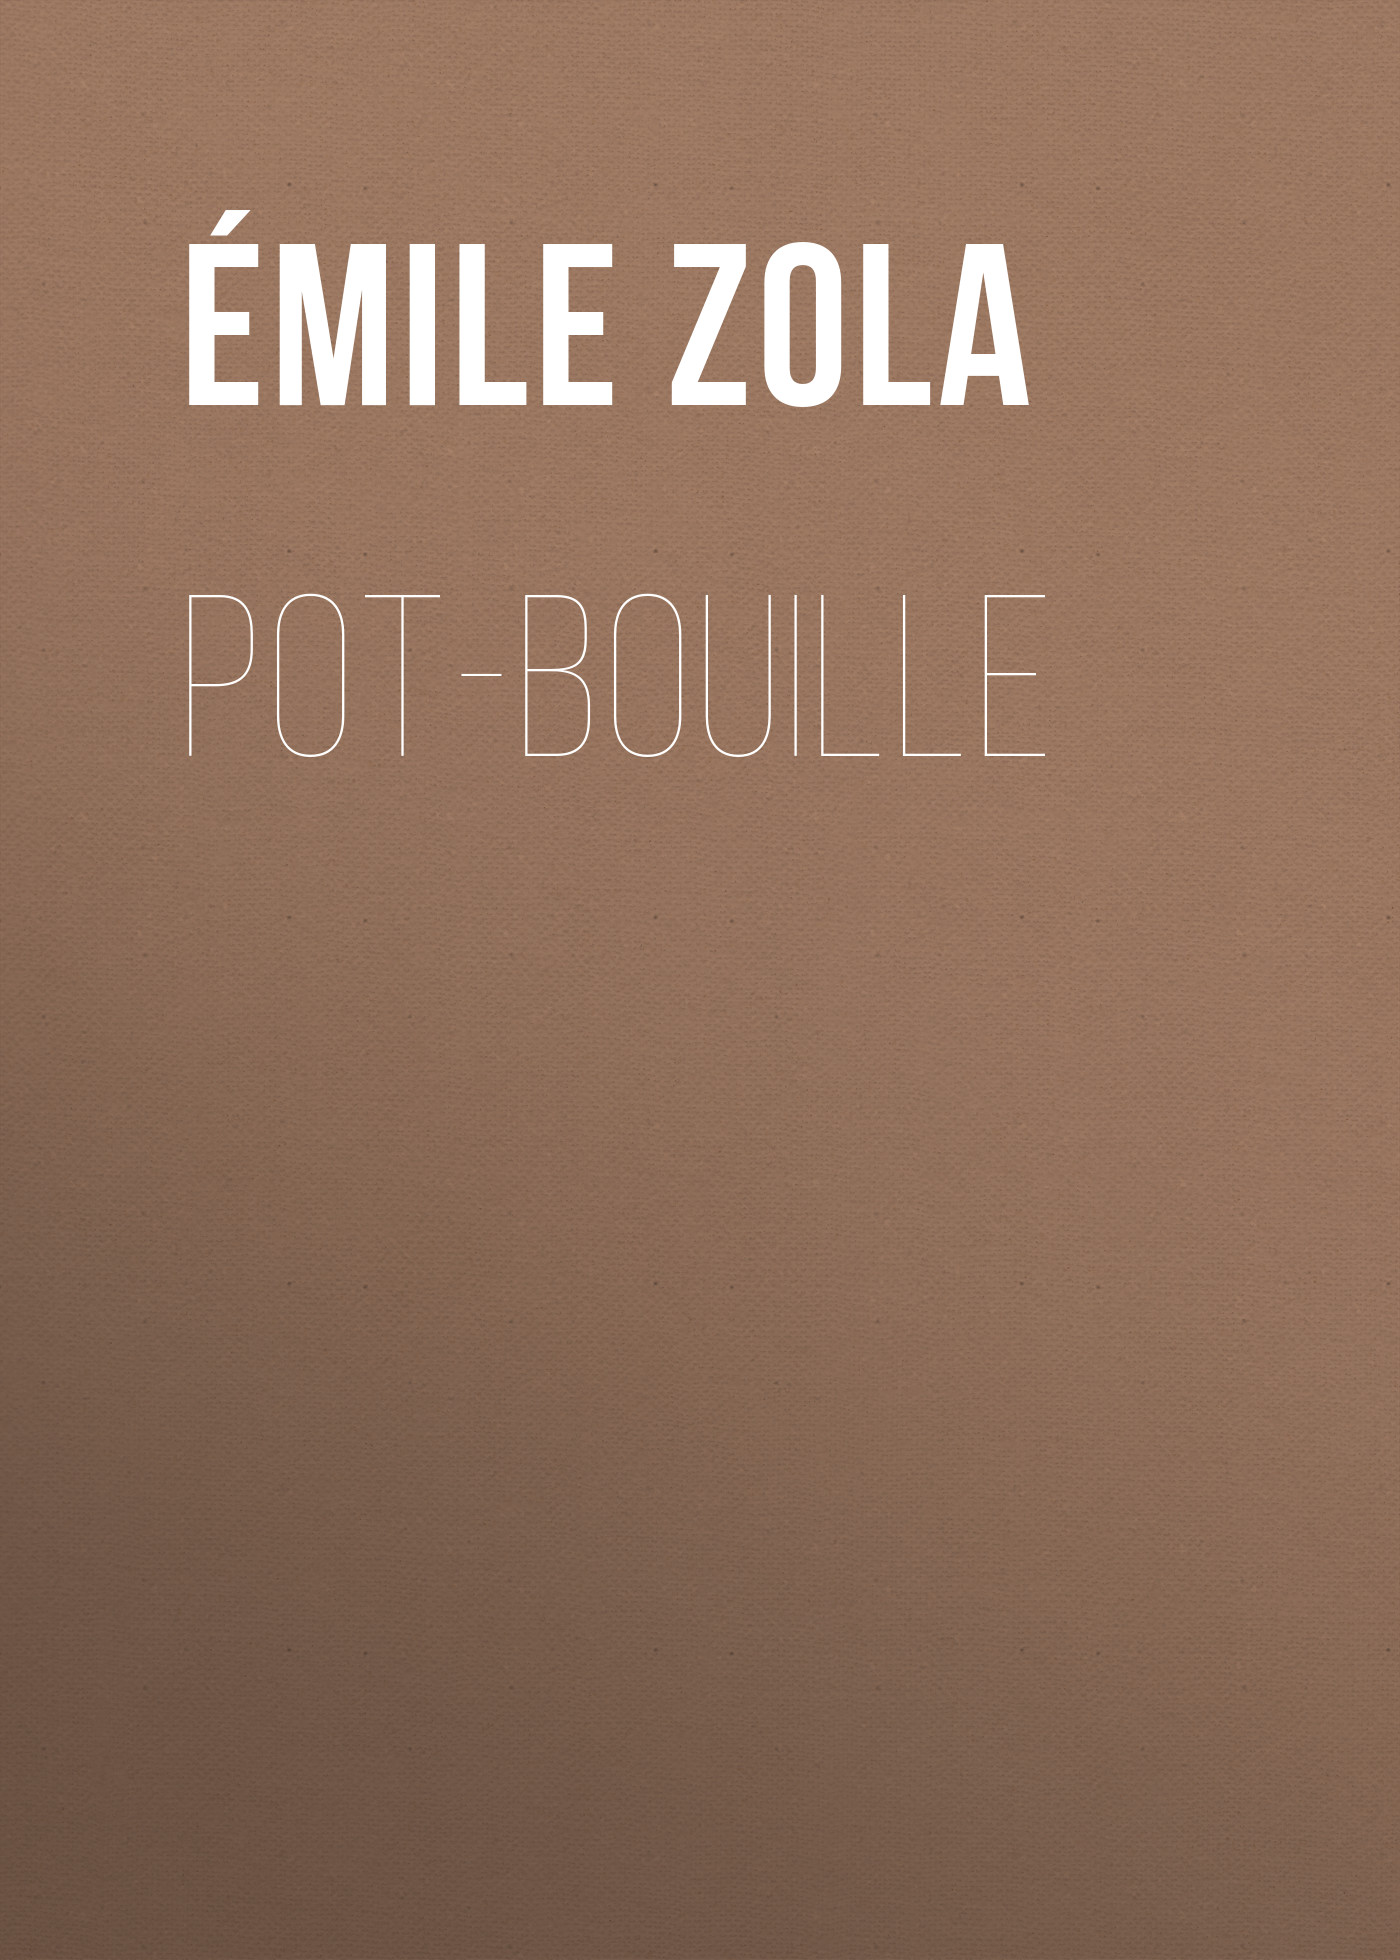 Книга Pot-Bouille из серии , созданная Émile Zola, может относится к жанру Литература 19 века, Зарубежная старинная литература, Зарубежная классика. Стоимость электронной книги Pot-Bouille с идентификатором 25560476 составляет 0 руб.